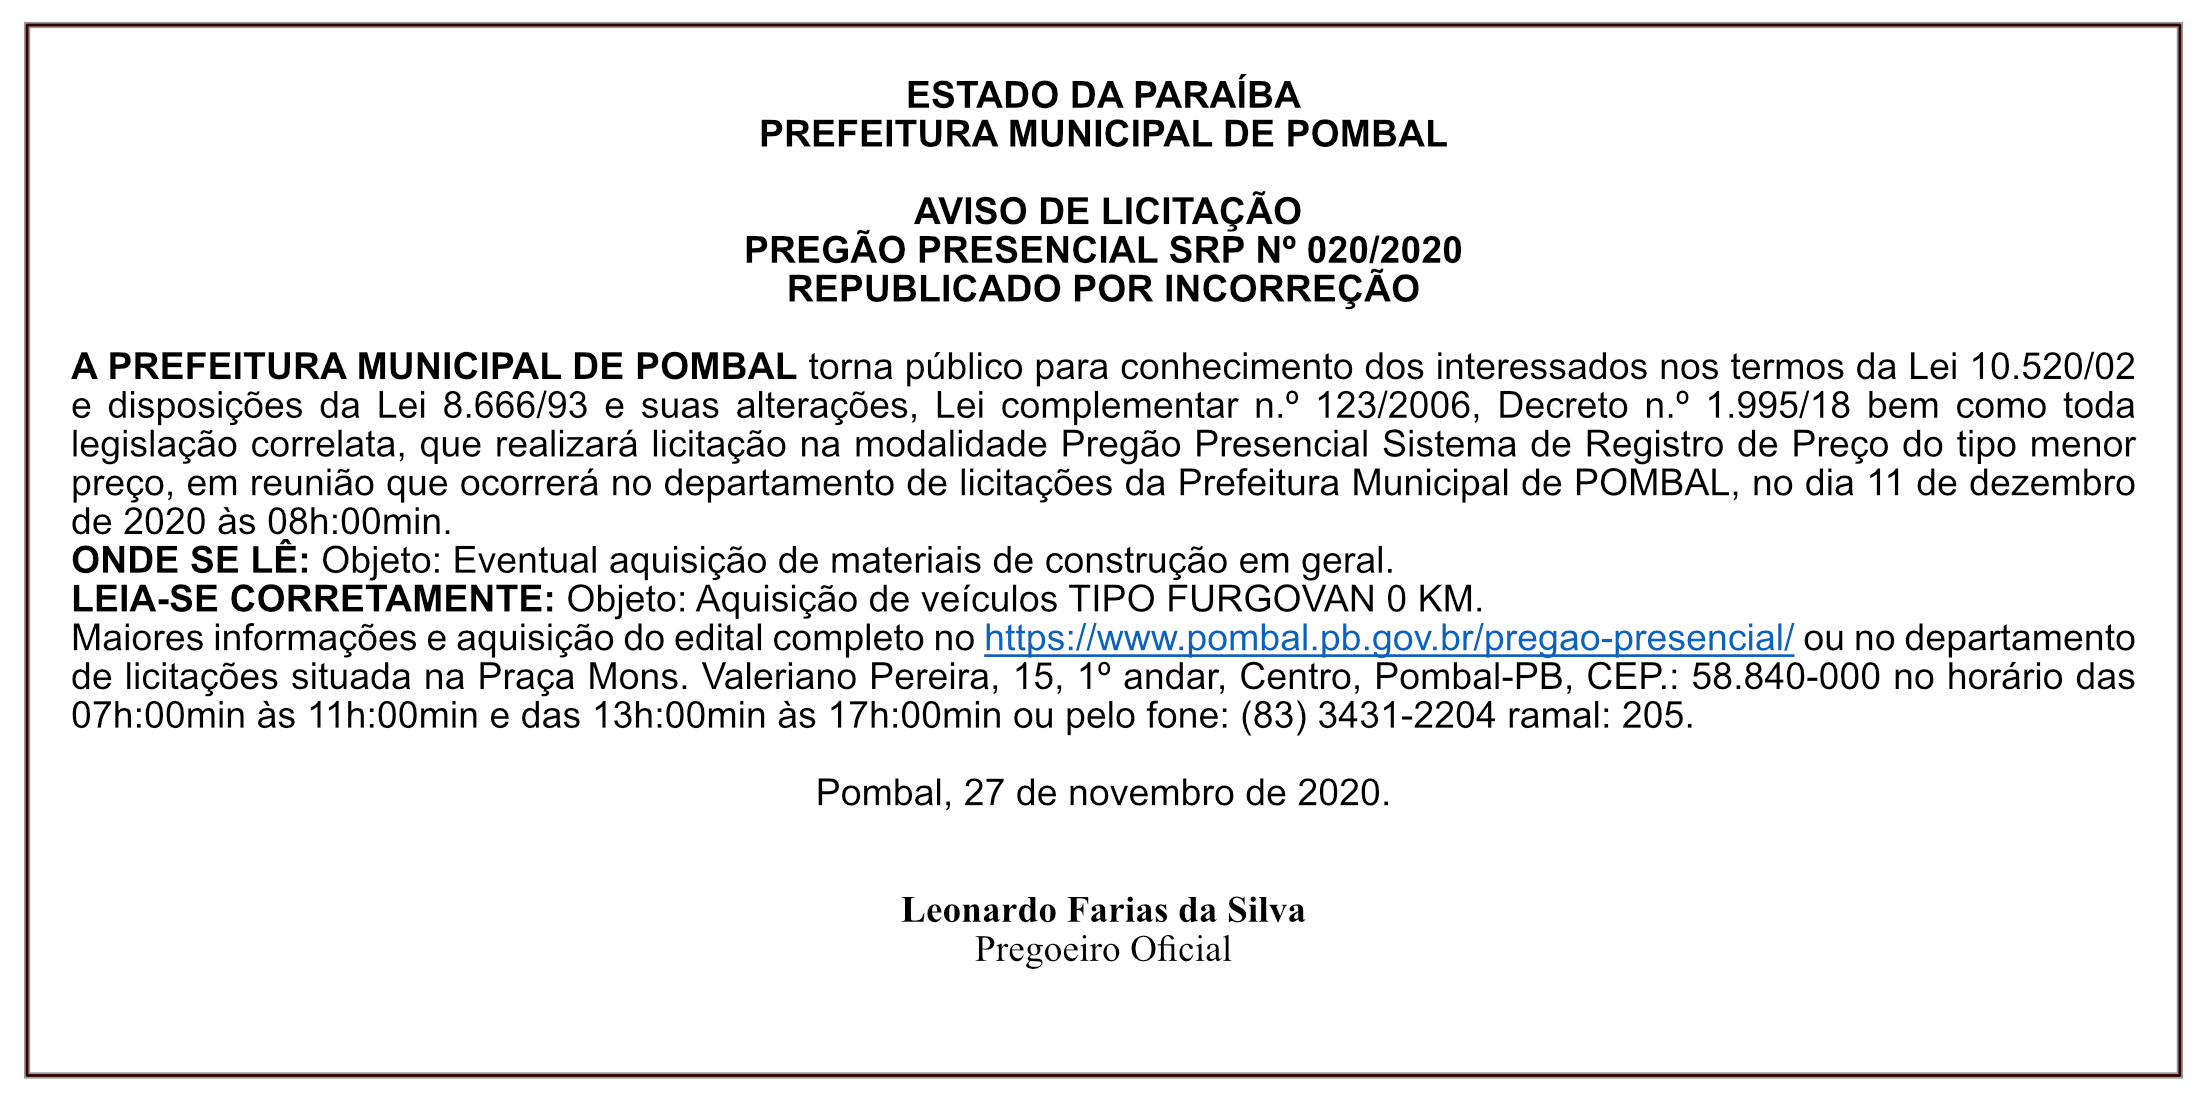 PREFEITURA MUNICIPAL DE POMBAL – AVISO DE LICITAÇÃO – PREGÃO PRESENCIAL – SRP Nº 020/2020 REPUBLICADO POR INCORREÇÃO